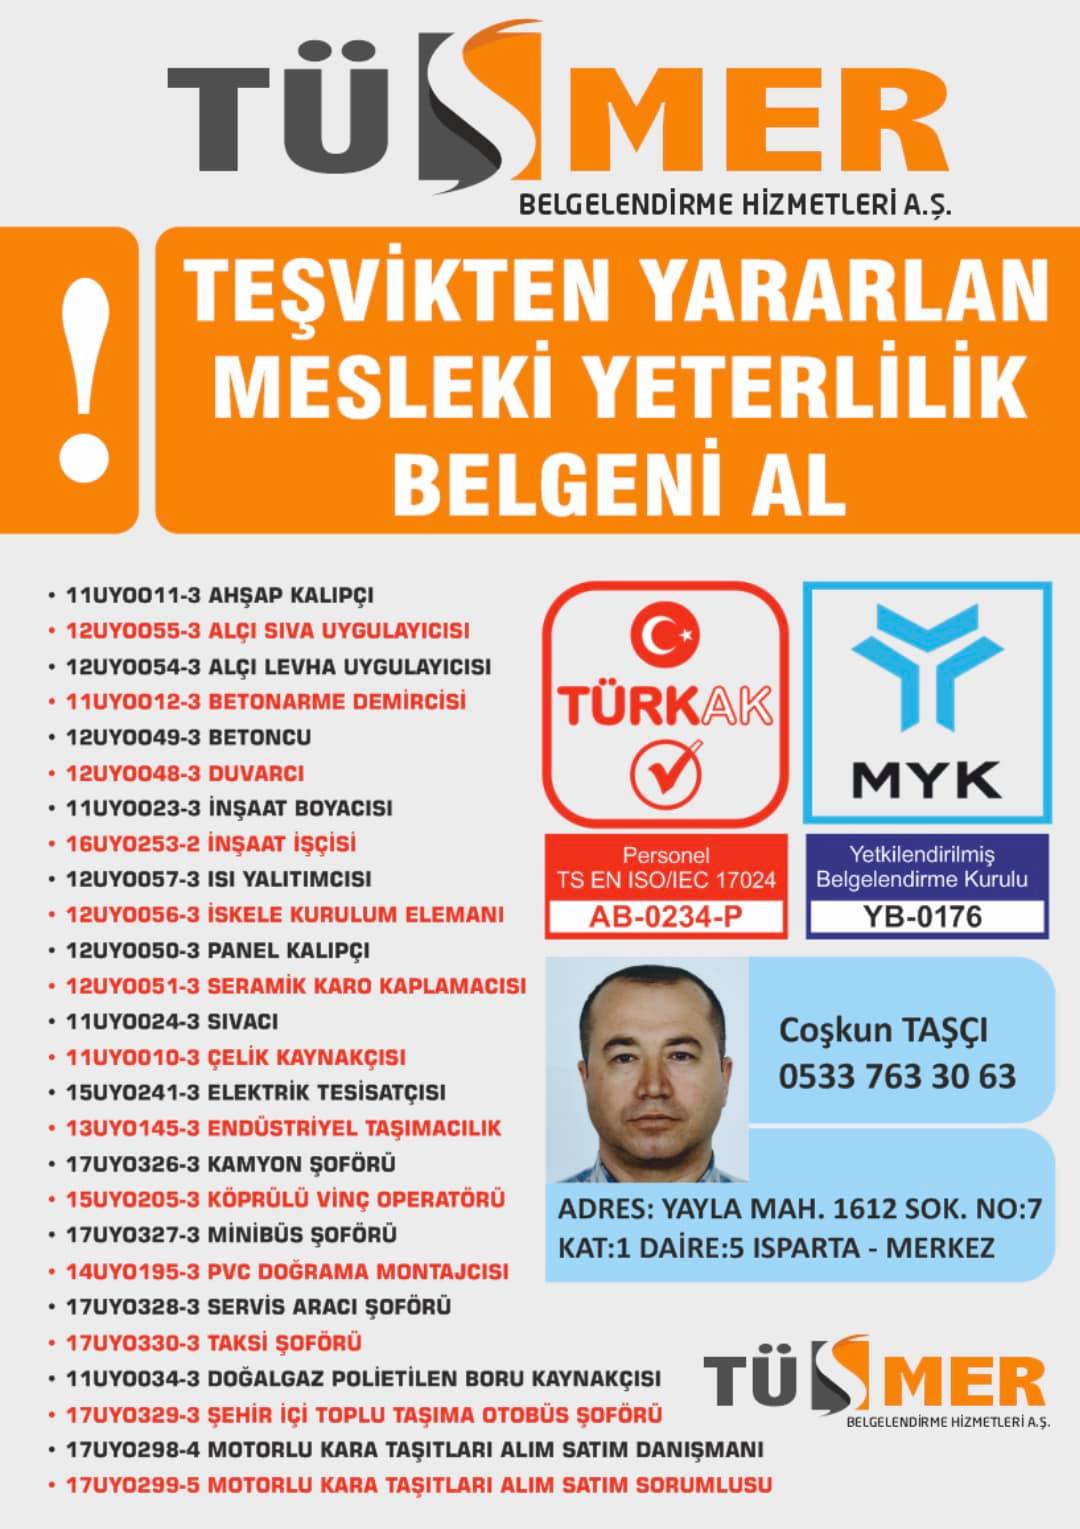 MYK MESLEKİ YETERLİLİK BELGESİ Nurtepe Kâğıthane İstanbul